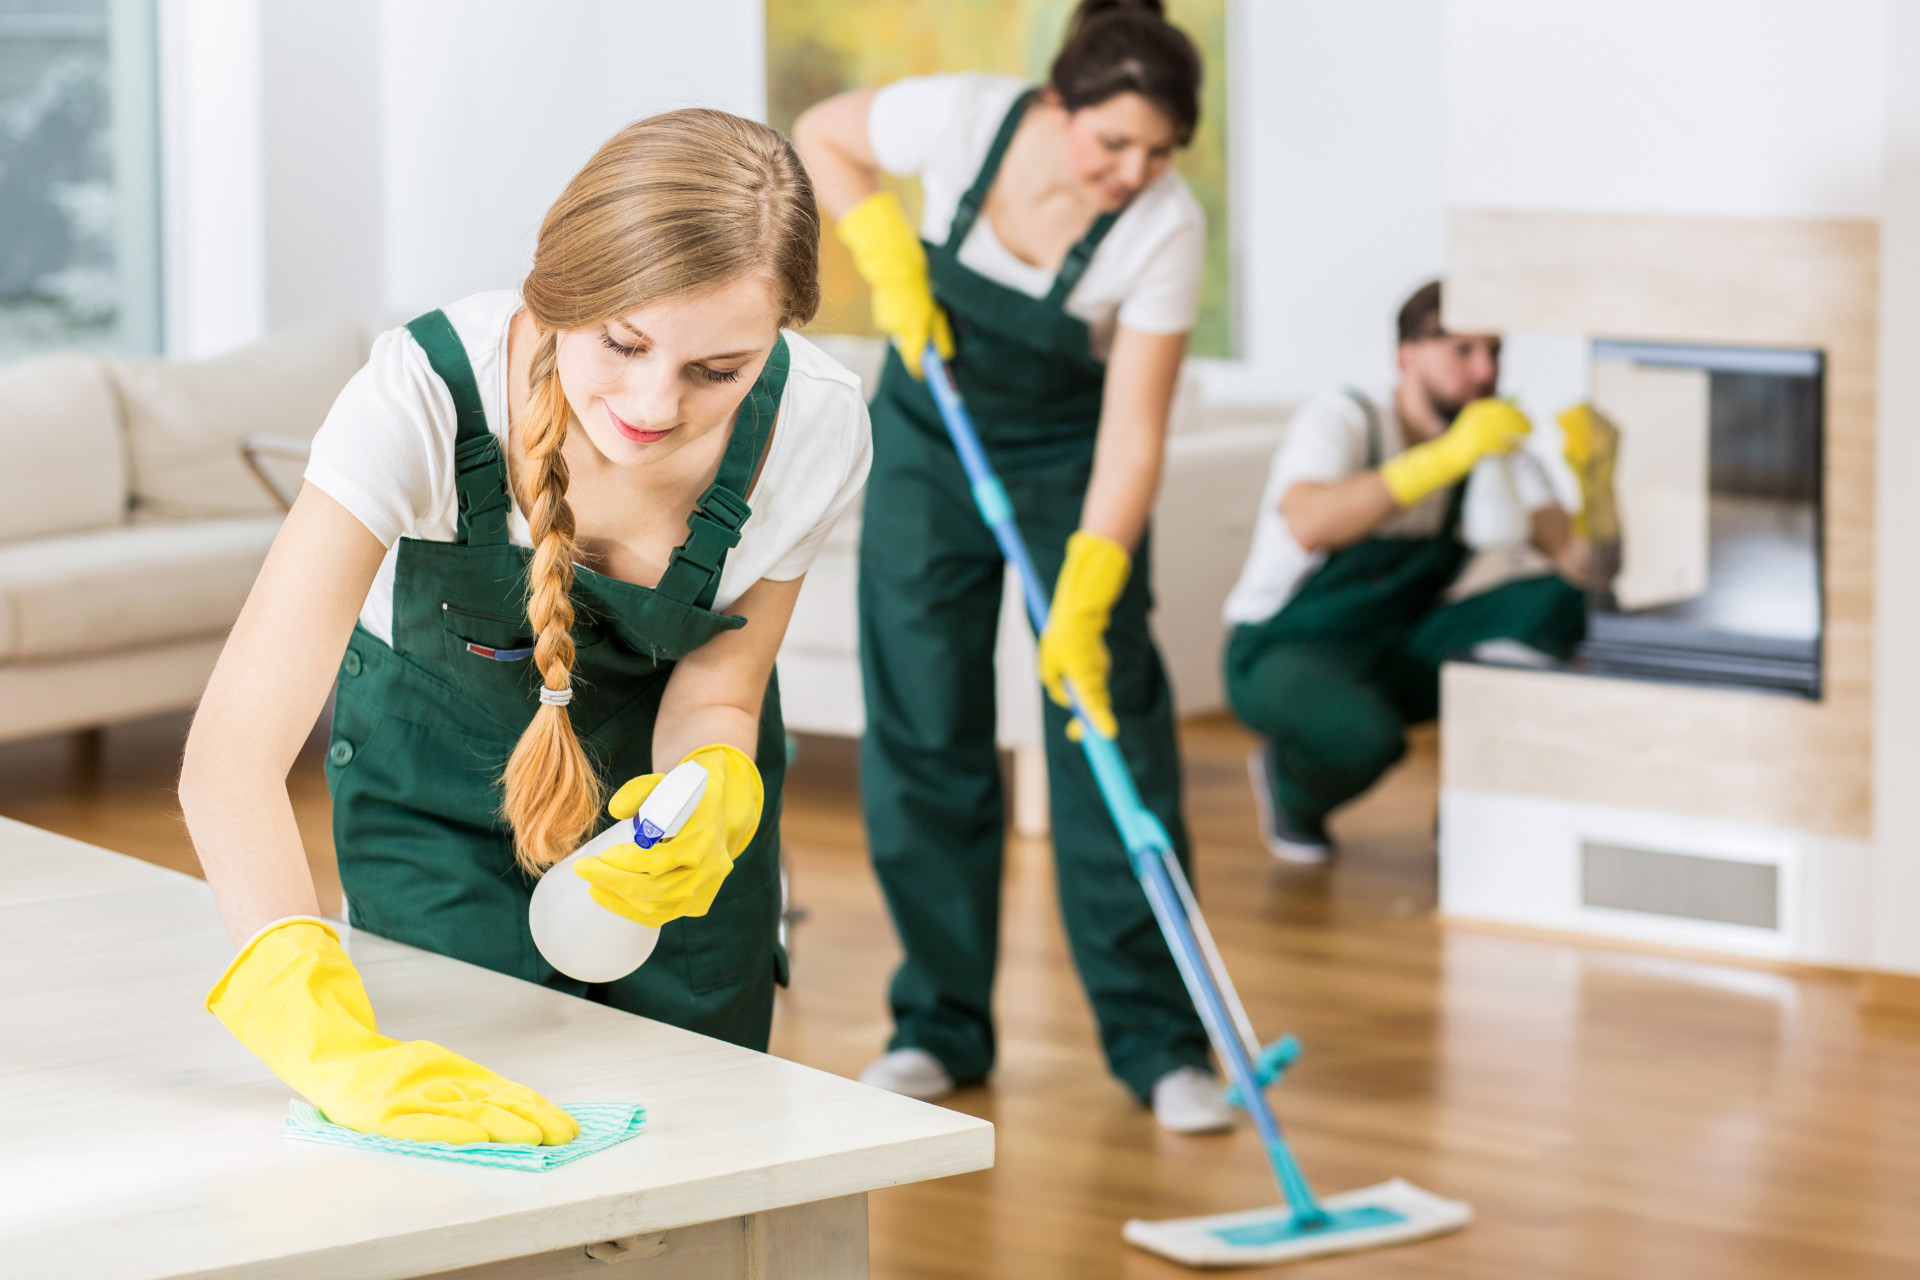 Housekeeping temporário ou em regime de outsourcing